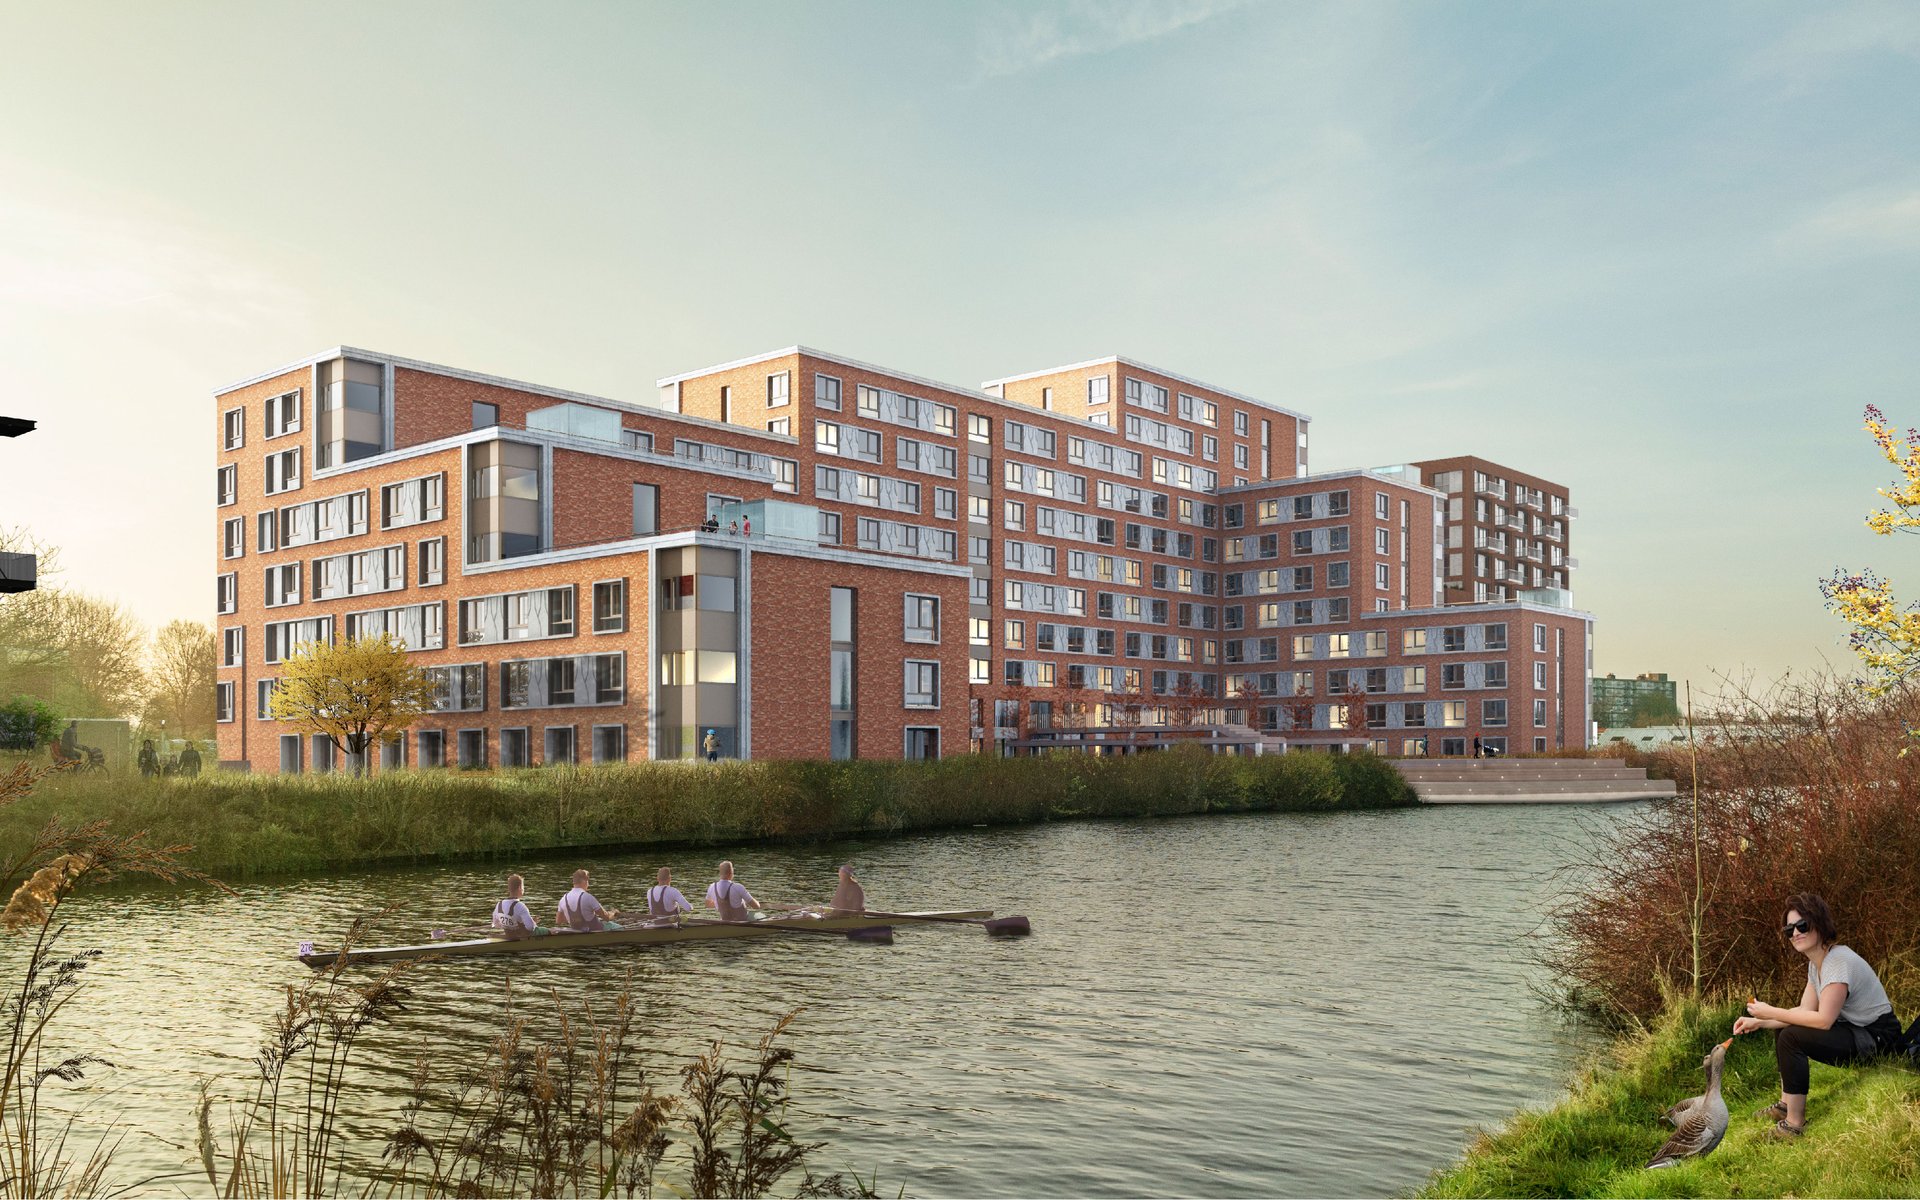 Ontwerp Portland gebouw aan de Reitdiepzone in Groningen